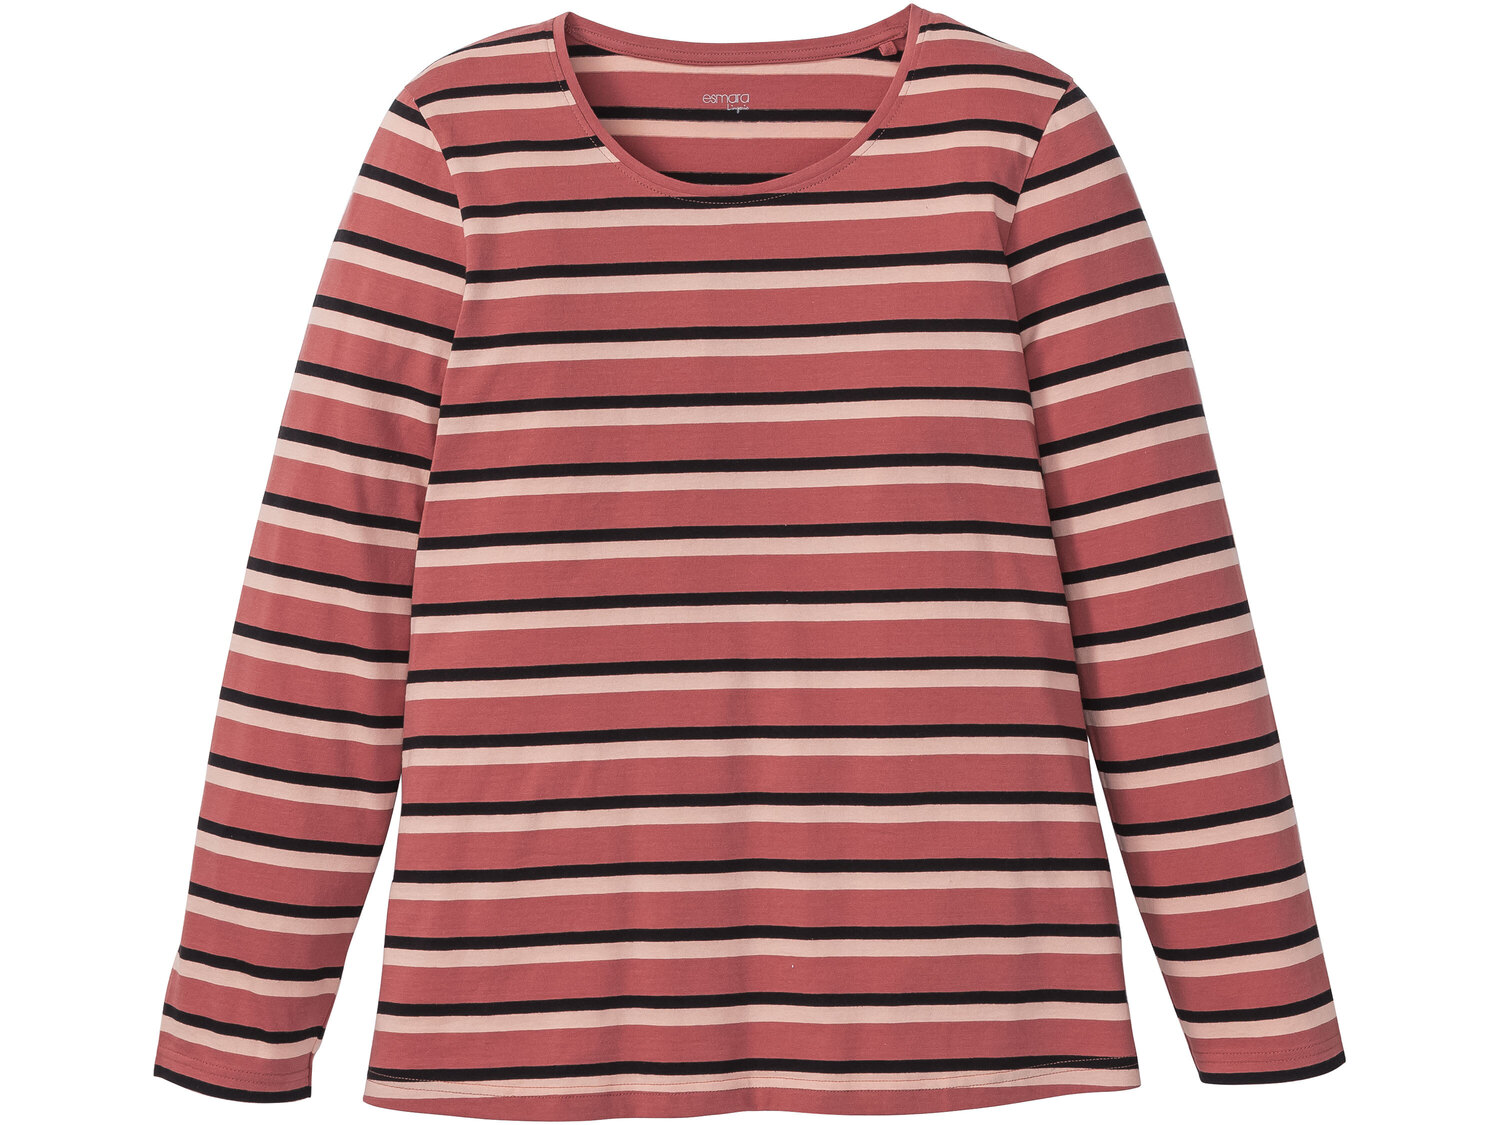 Piżama z bawełny Esmara Lingerie, cena 34,99 PLN 
- 100% bawełny
- rozmiary: ...